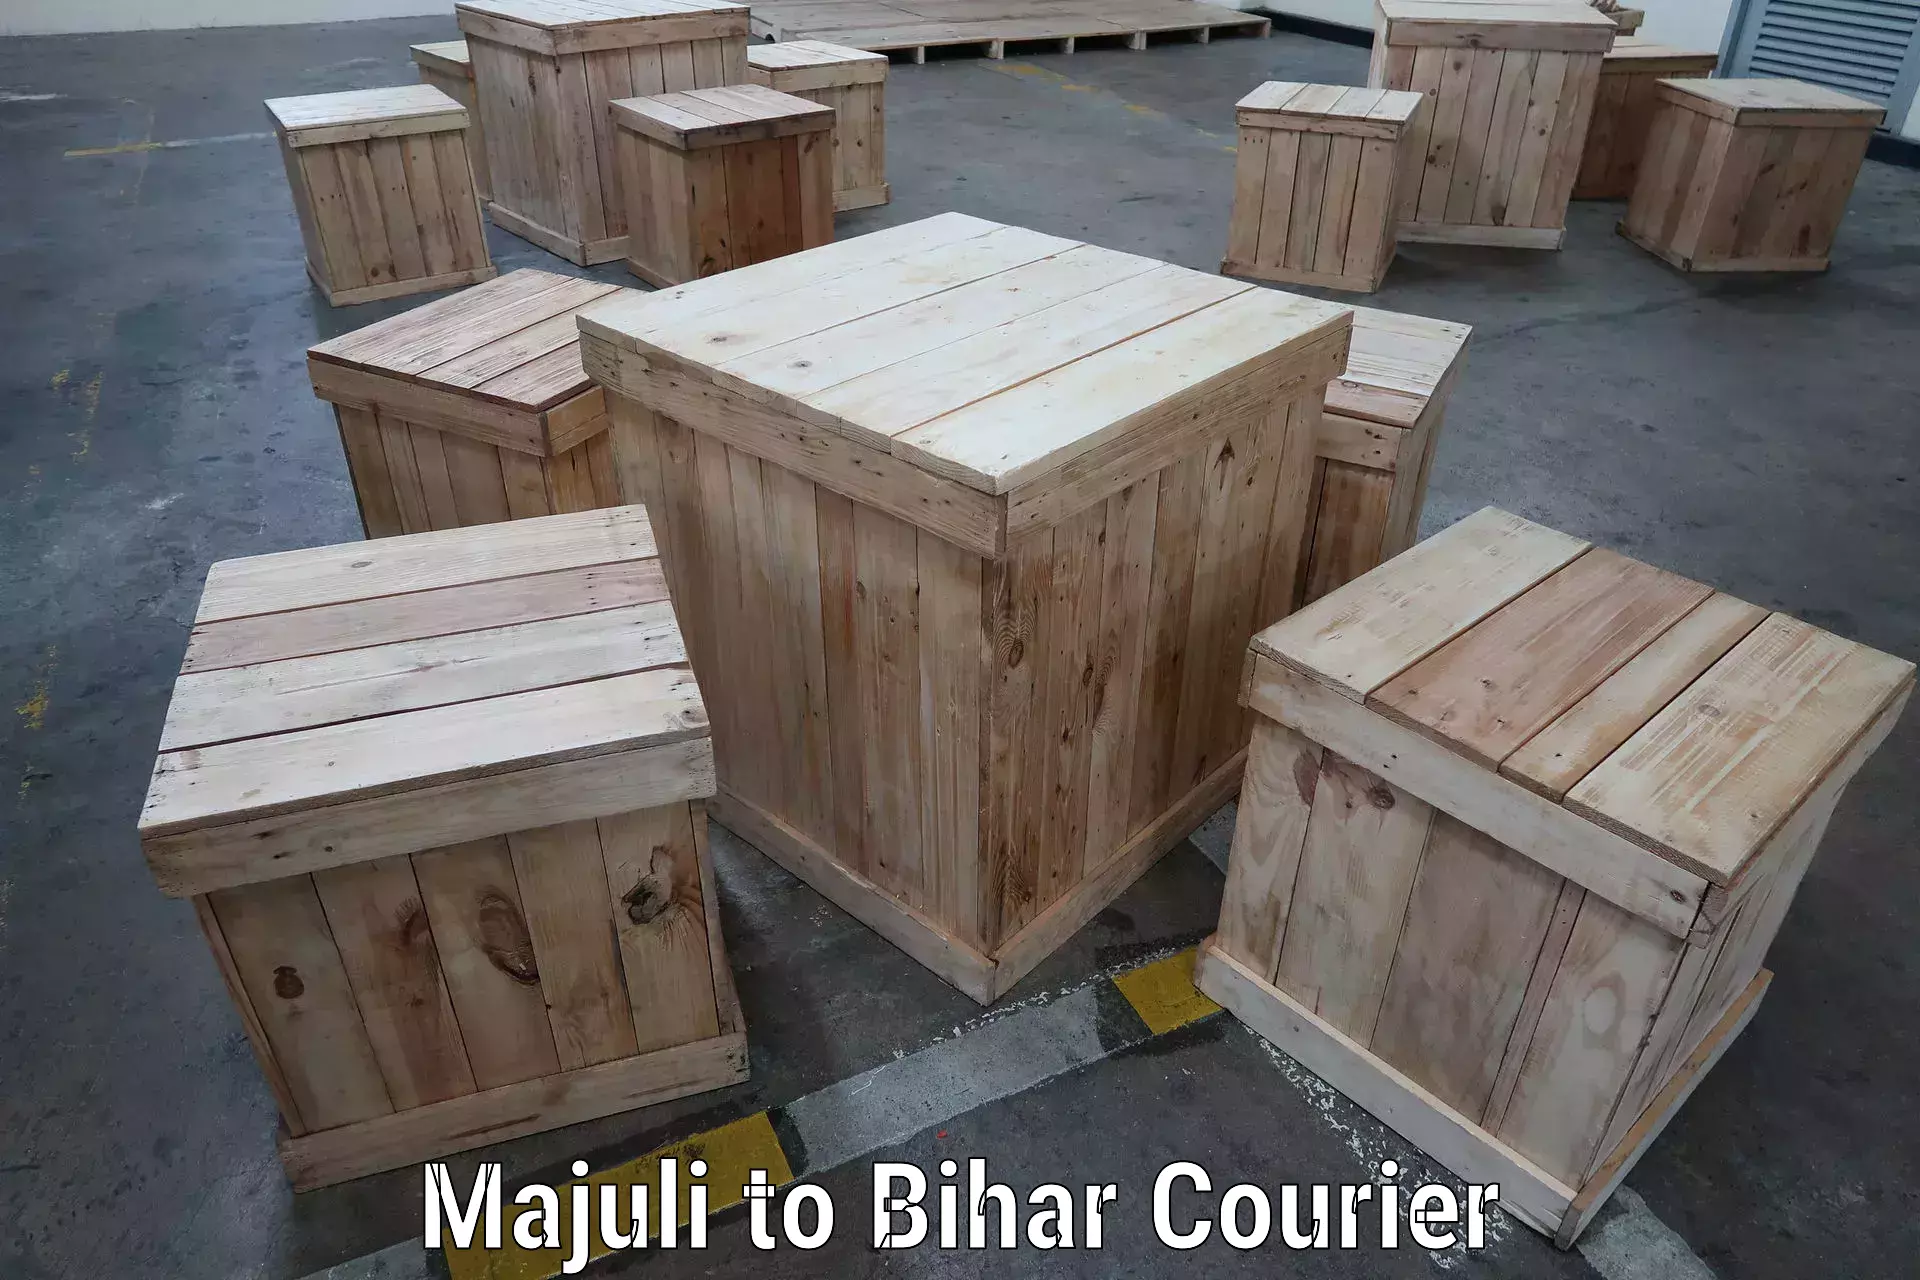 Customizable shipping options Majuli to Sandesh